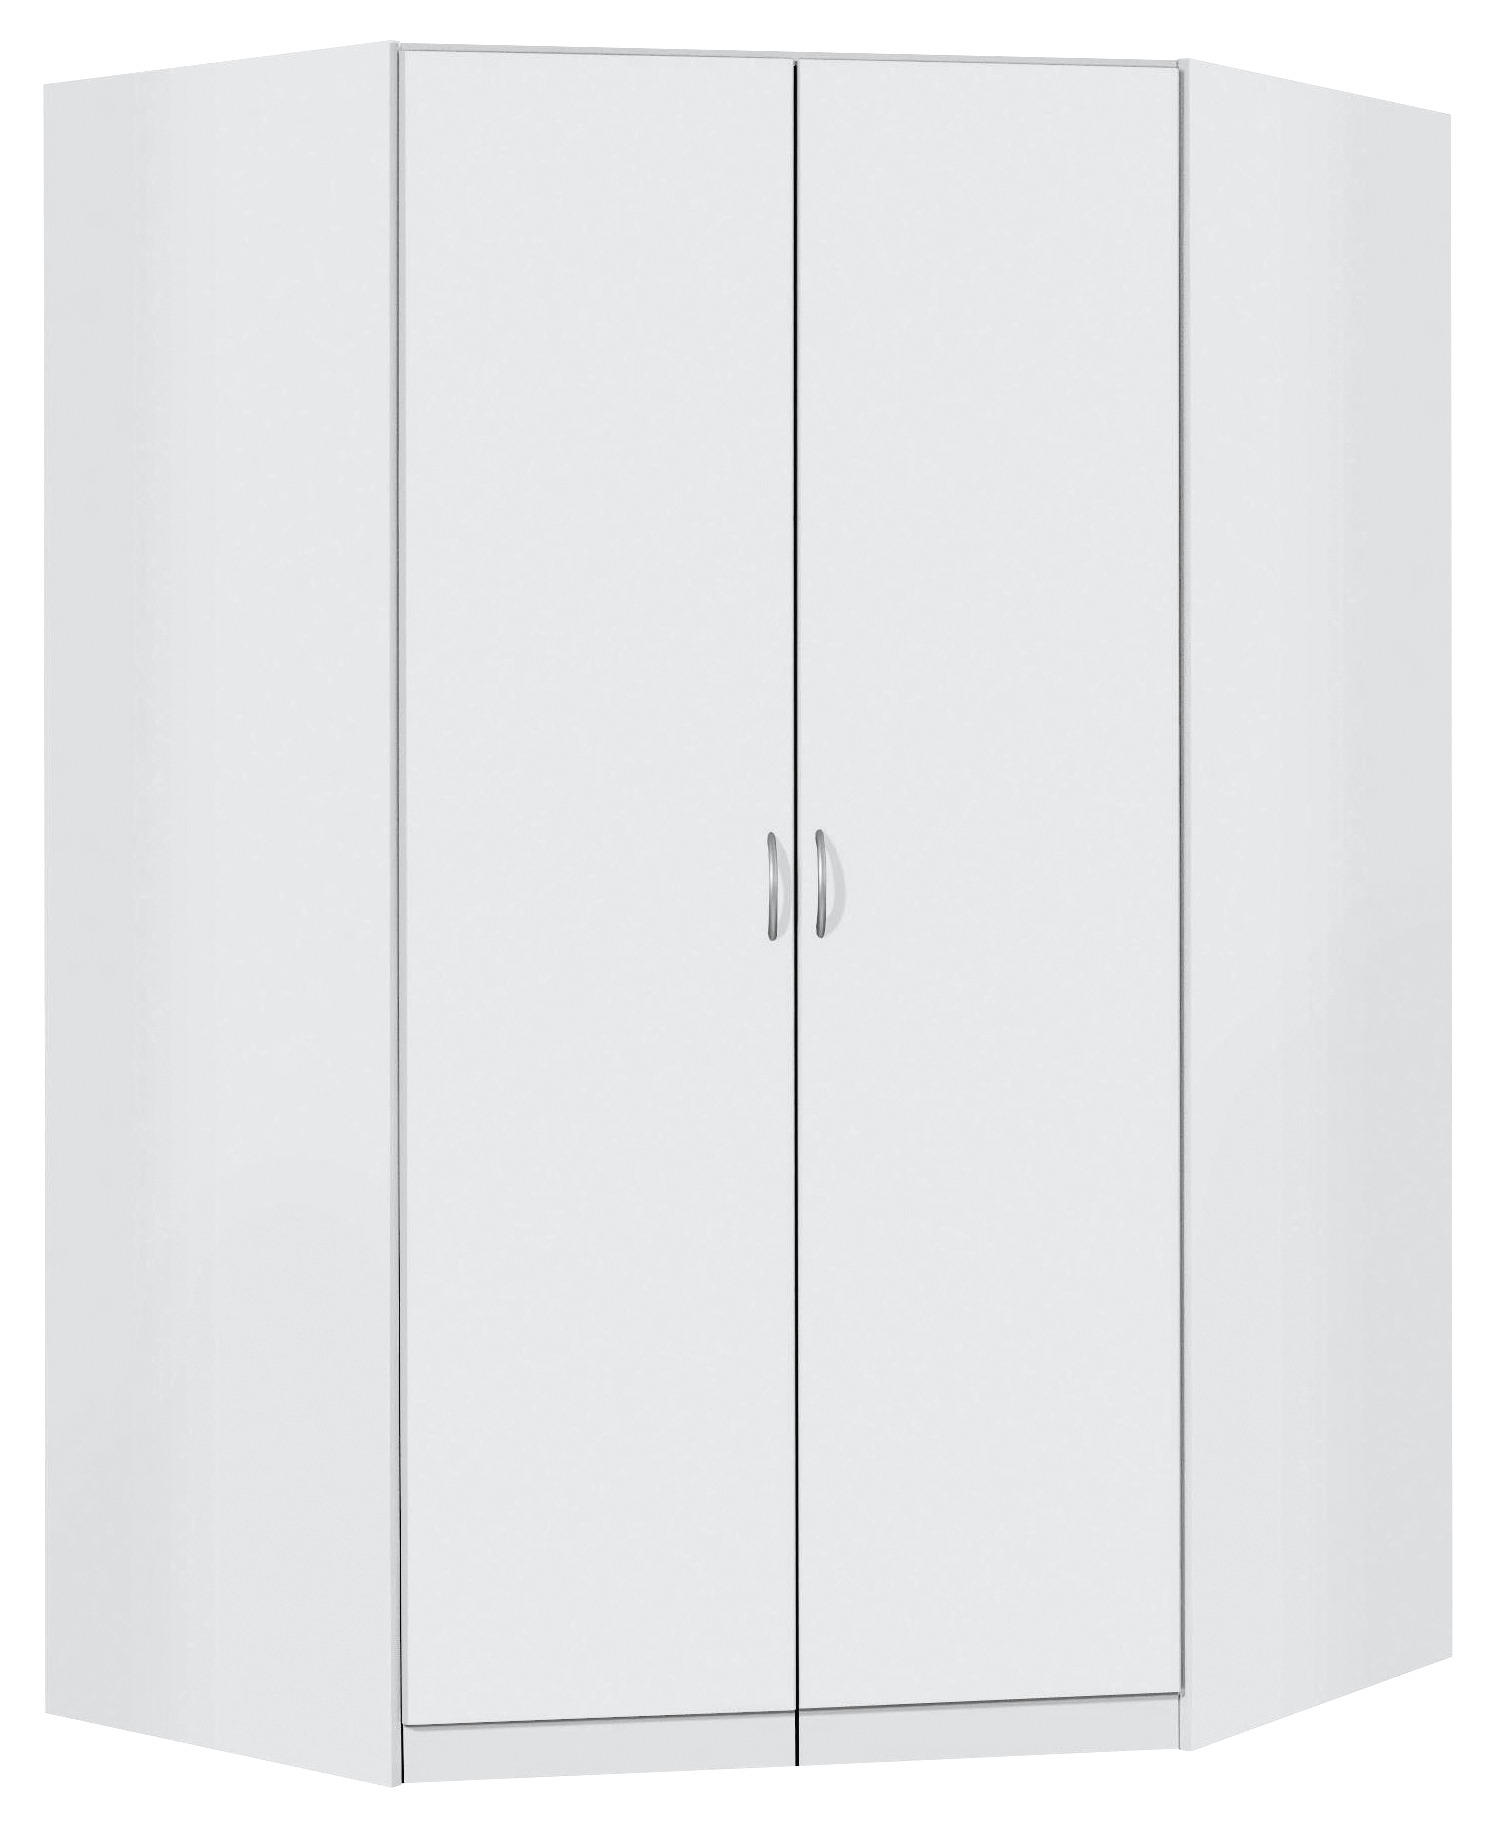 ECKSCHRANK Weiß  - Silberfarben/Weiß, Design, Holzwerkstoff/Kunststoff (117/117/197/52,2cm) - Carryhome